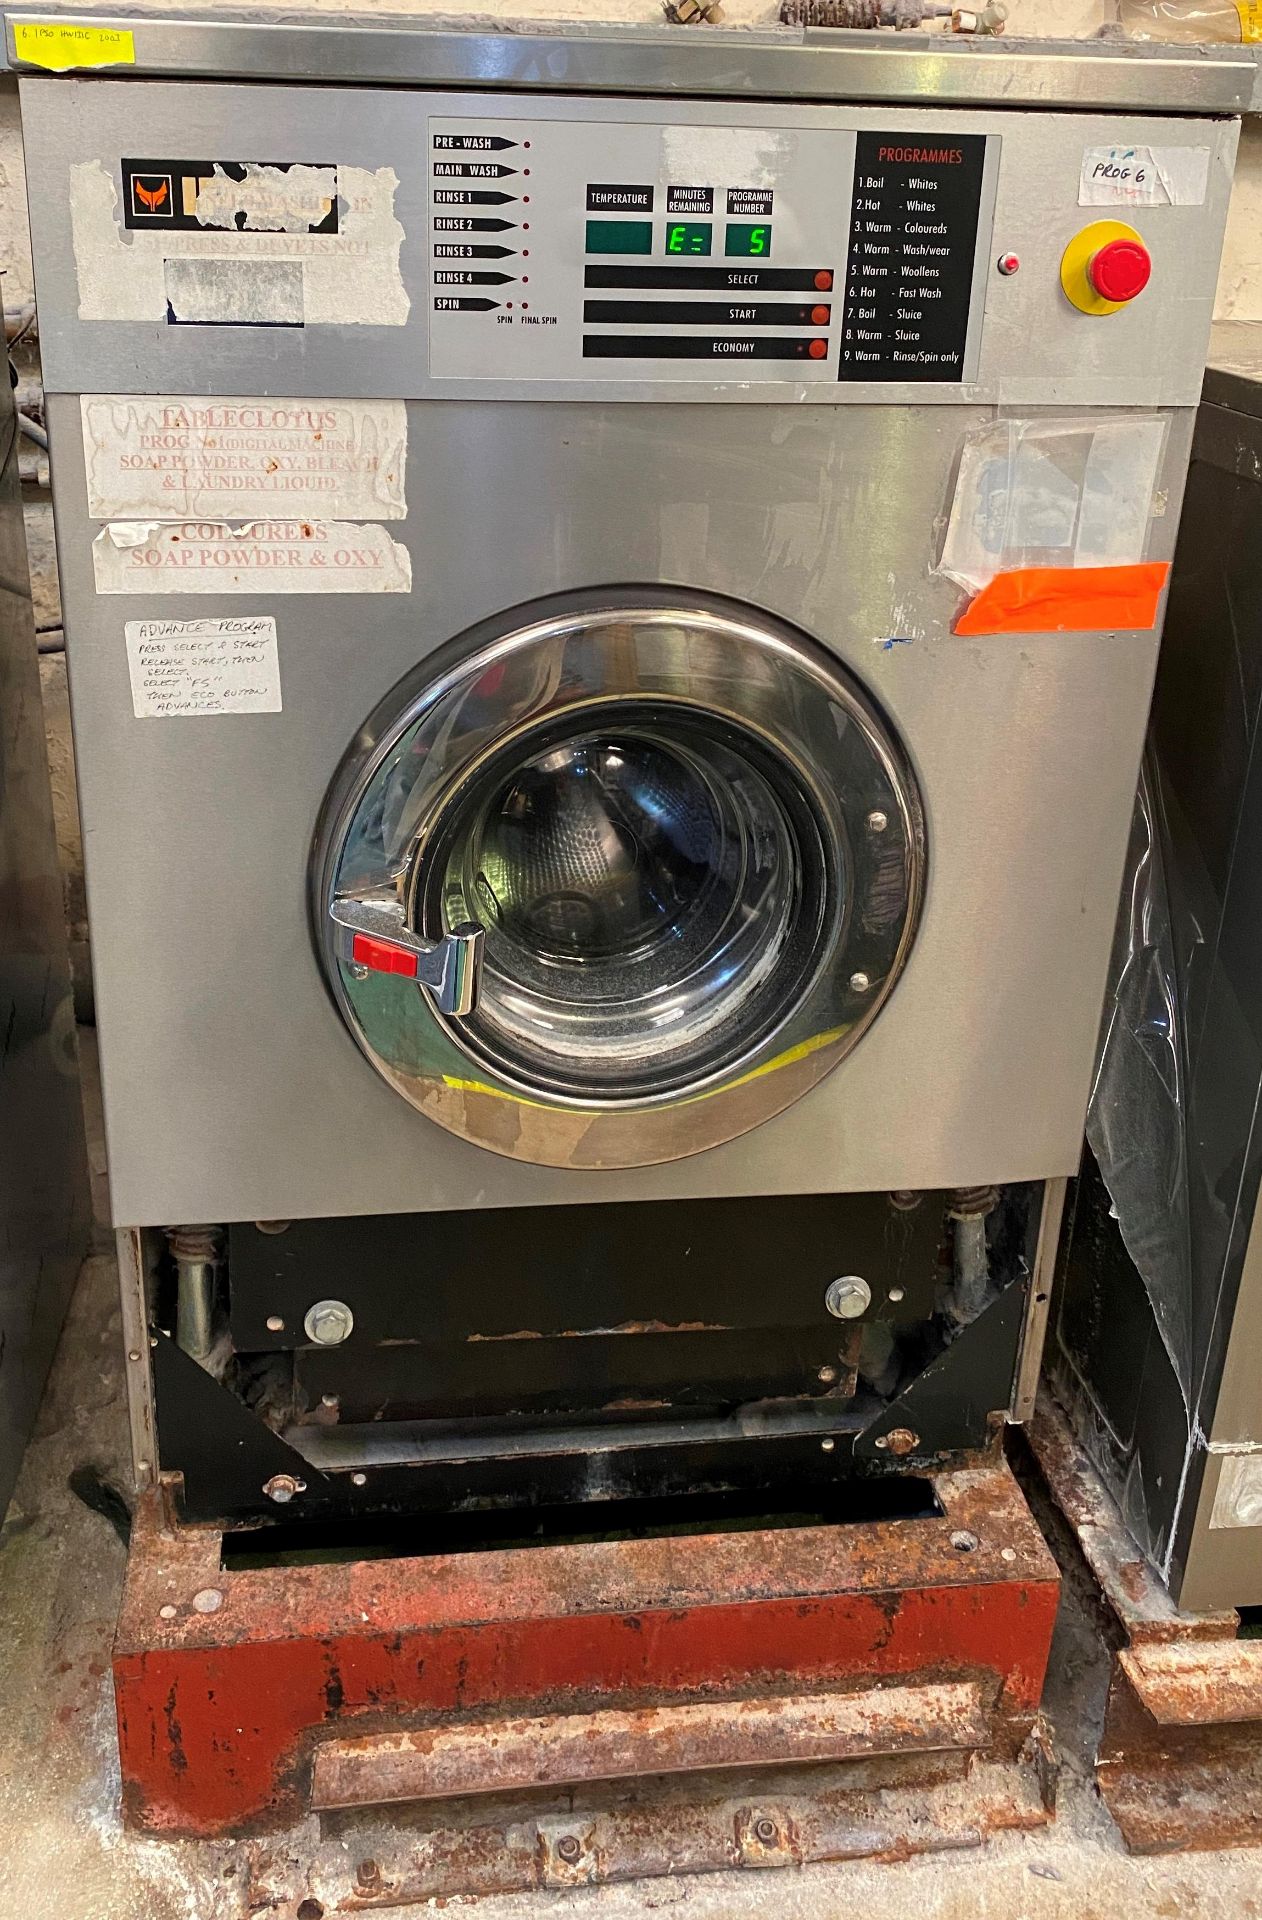 IPSO HW131C Commercial Washing Machine DOM 1998 - 3 phase